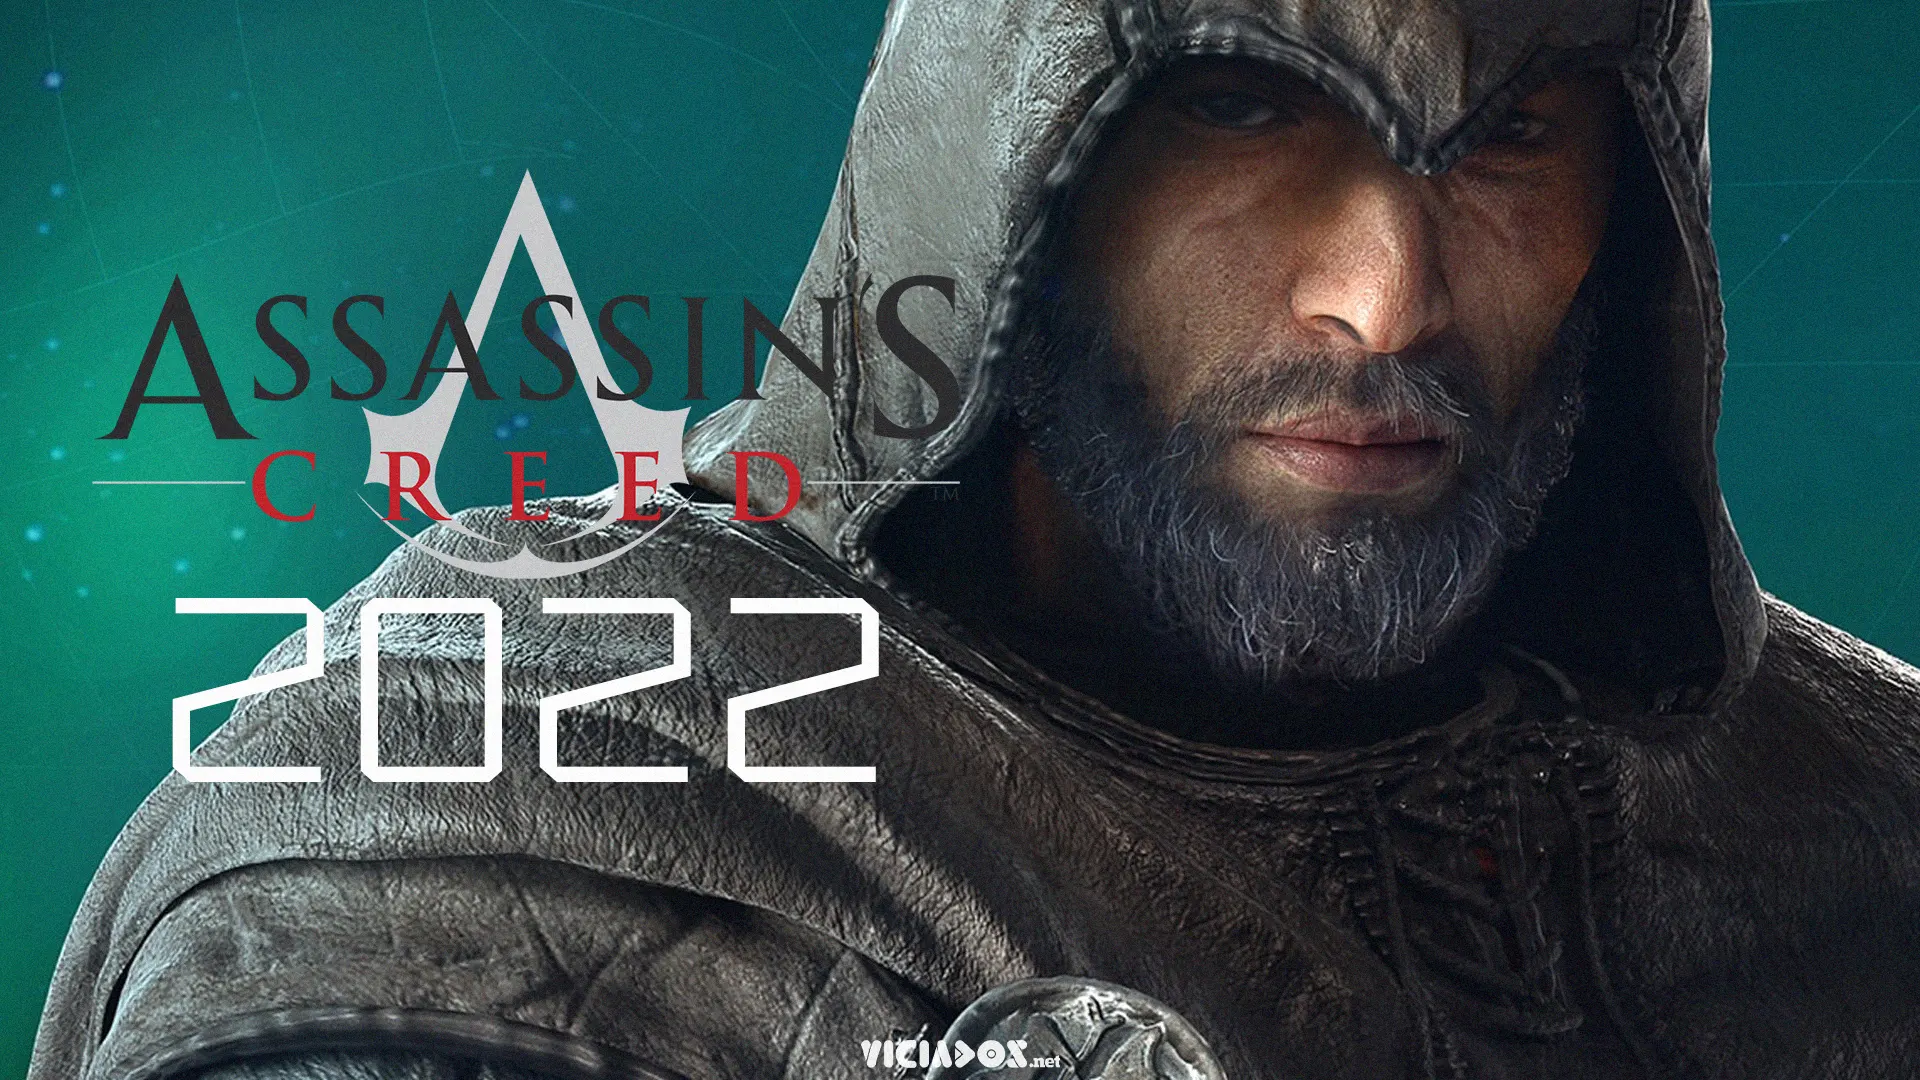 Assassin's Creed Rift ou Infinity? Ubisoft prepara grande anúncio nesta data! 2023 Viciados